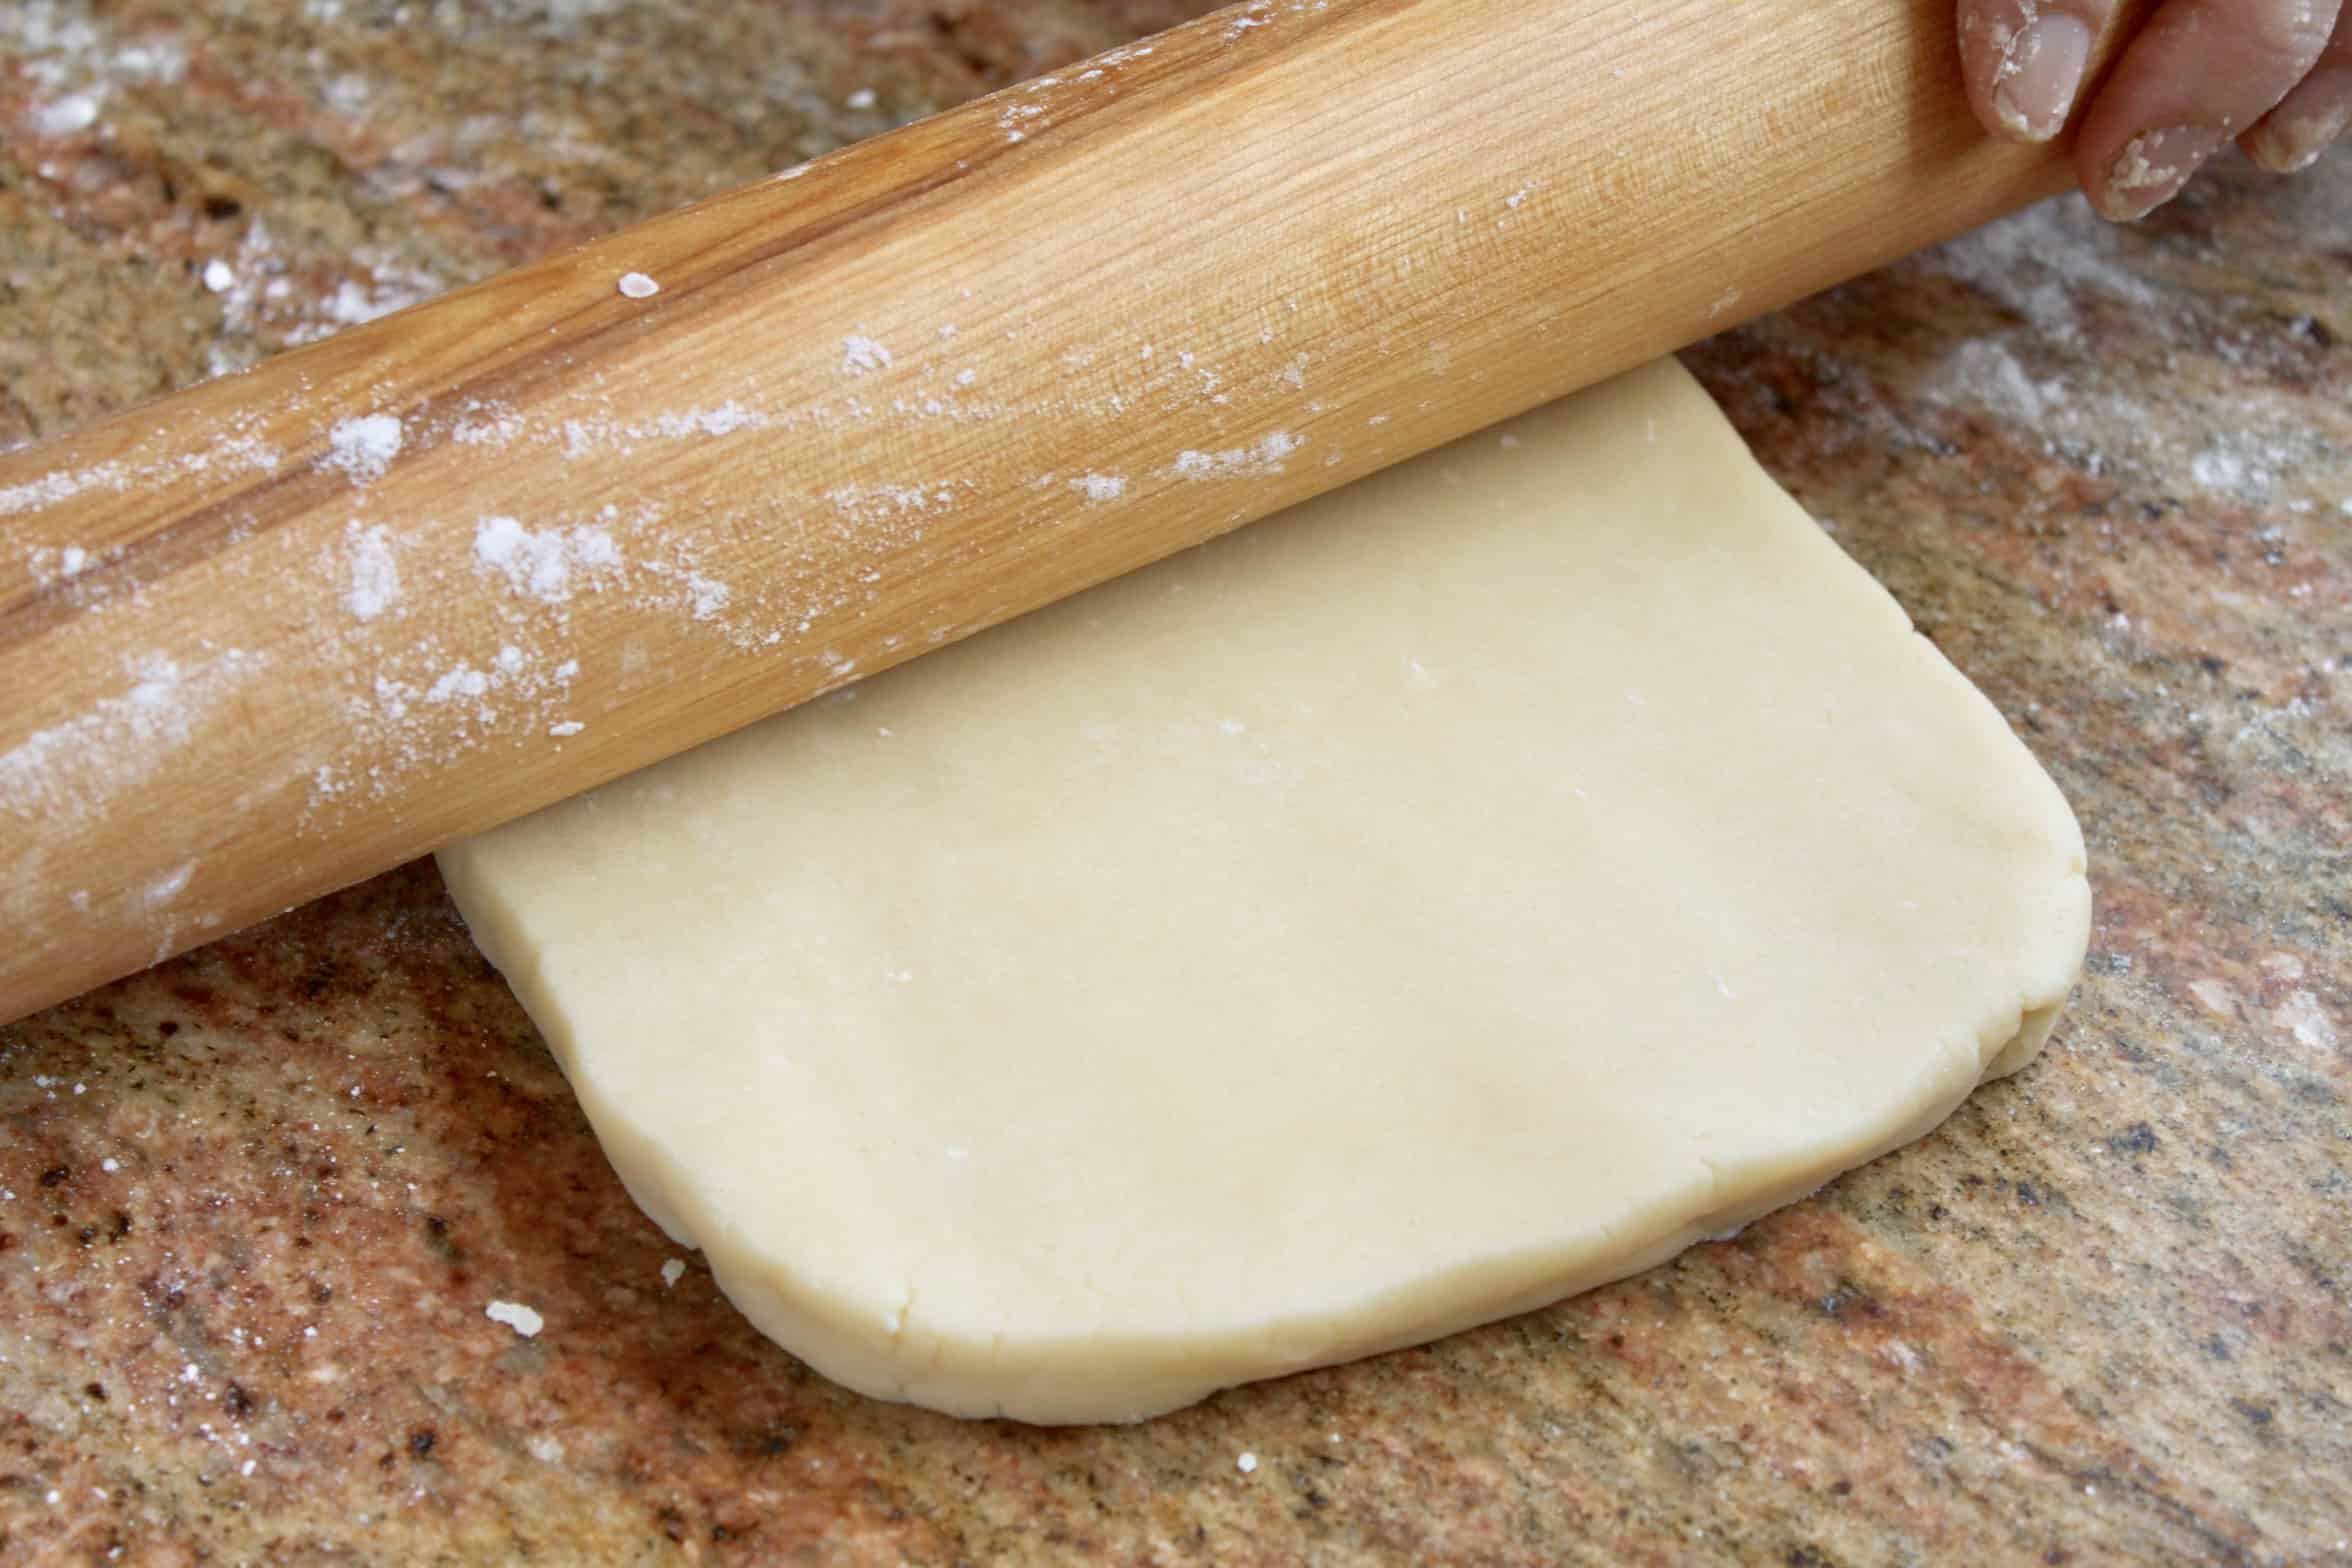 rolling out shortbread dough